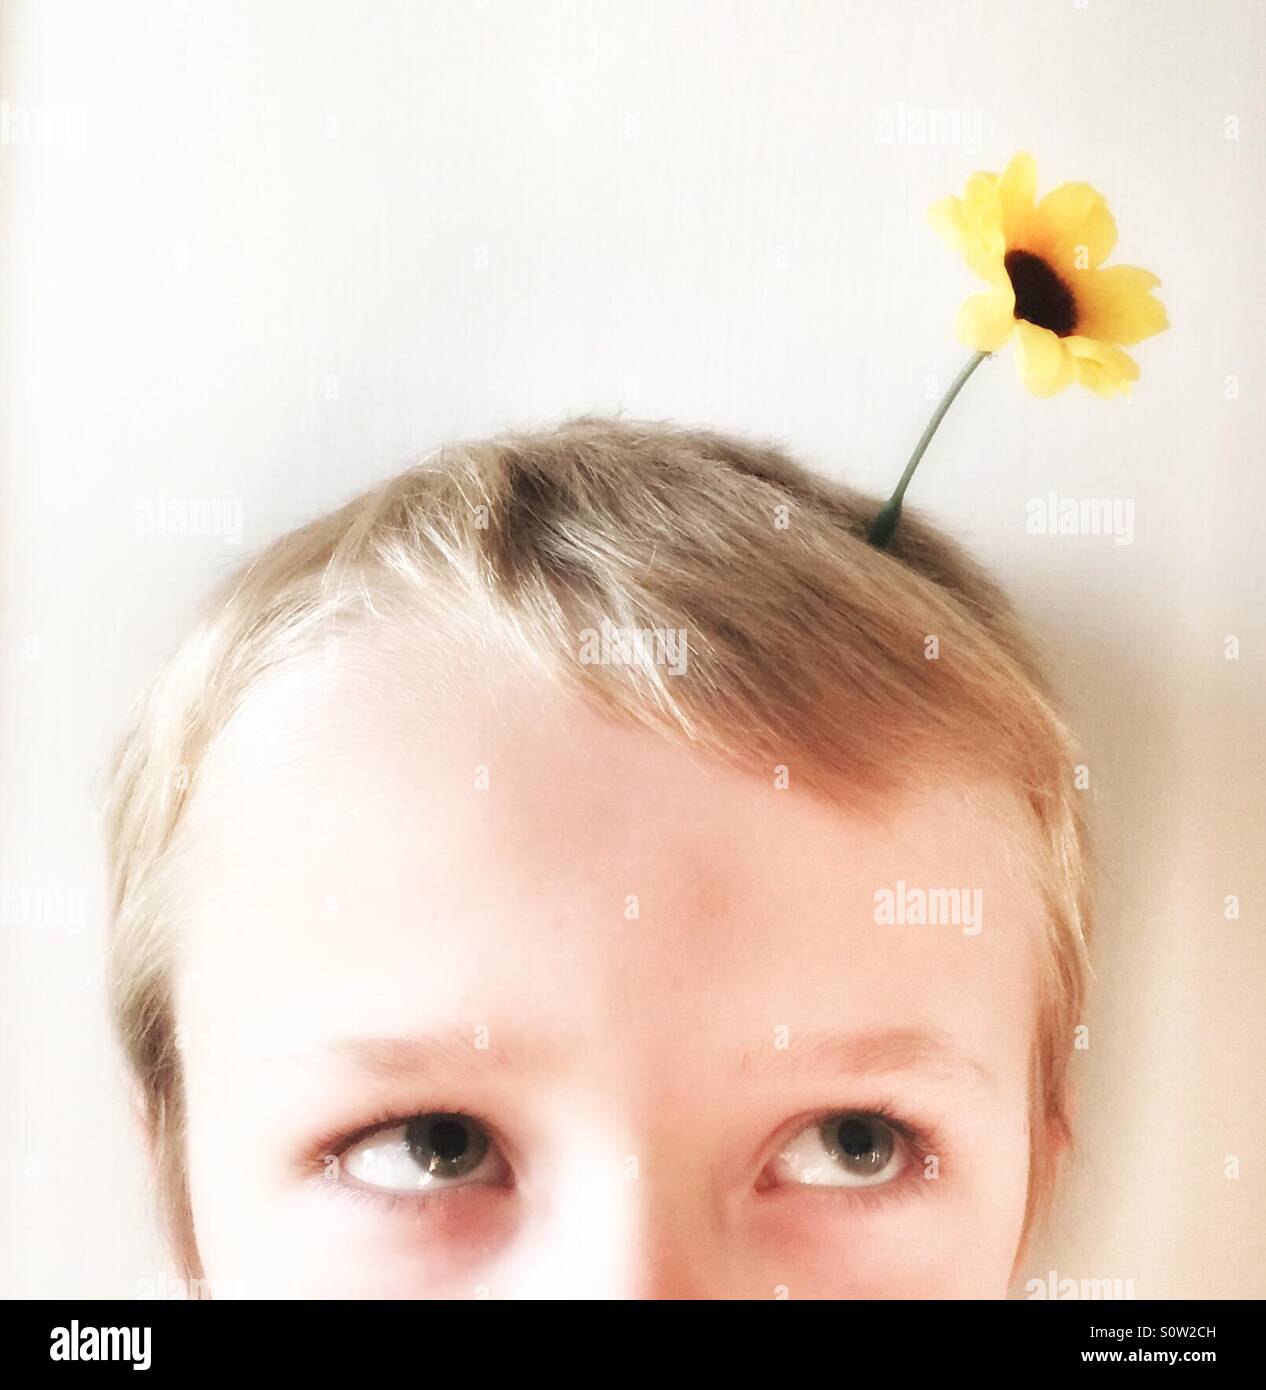 Jeune garçon avec des idées brillantes, le printemps est dans les cheveux. Portrait d'un jeune garçon avec une fleur dans ses cheveux. Pensez à l'environnement. Banque D'Images